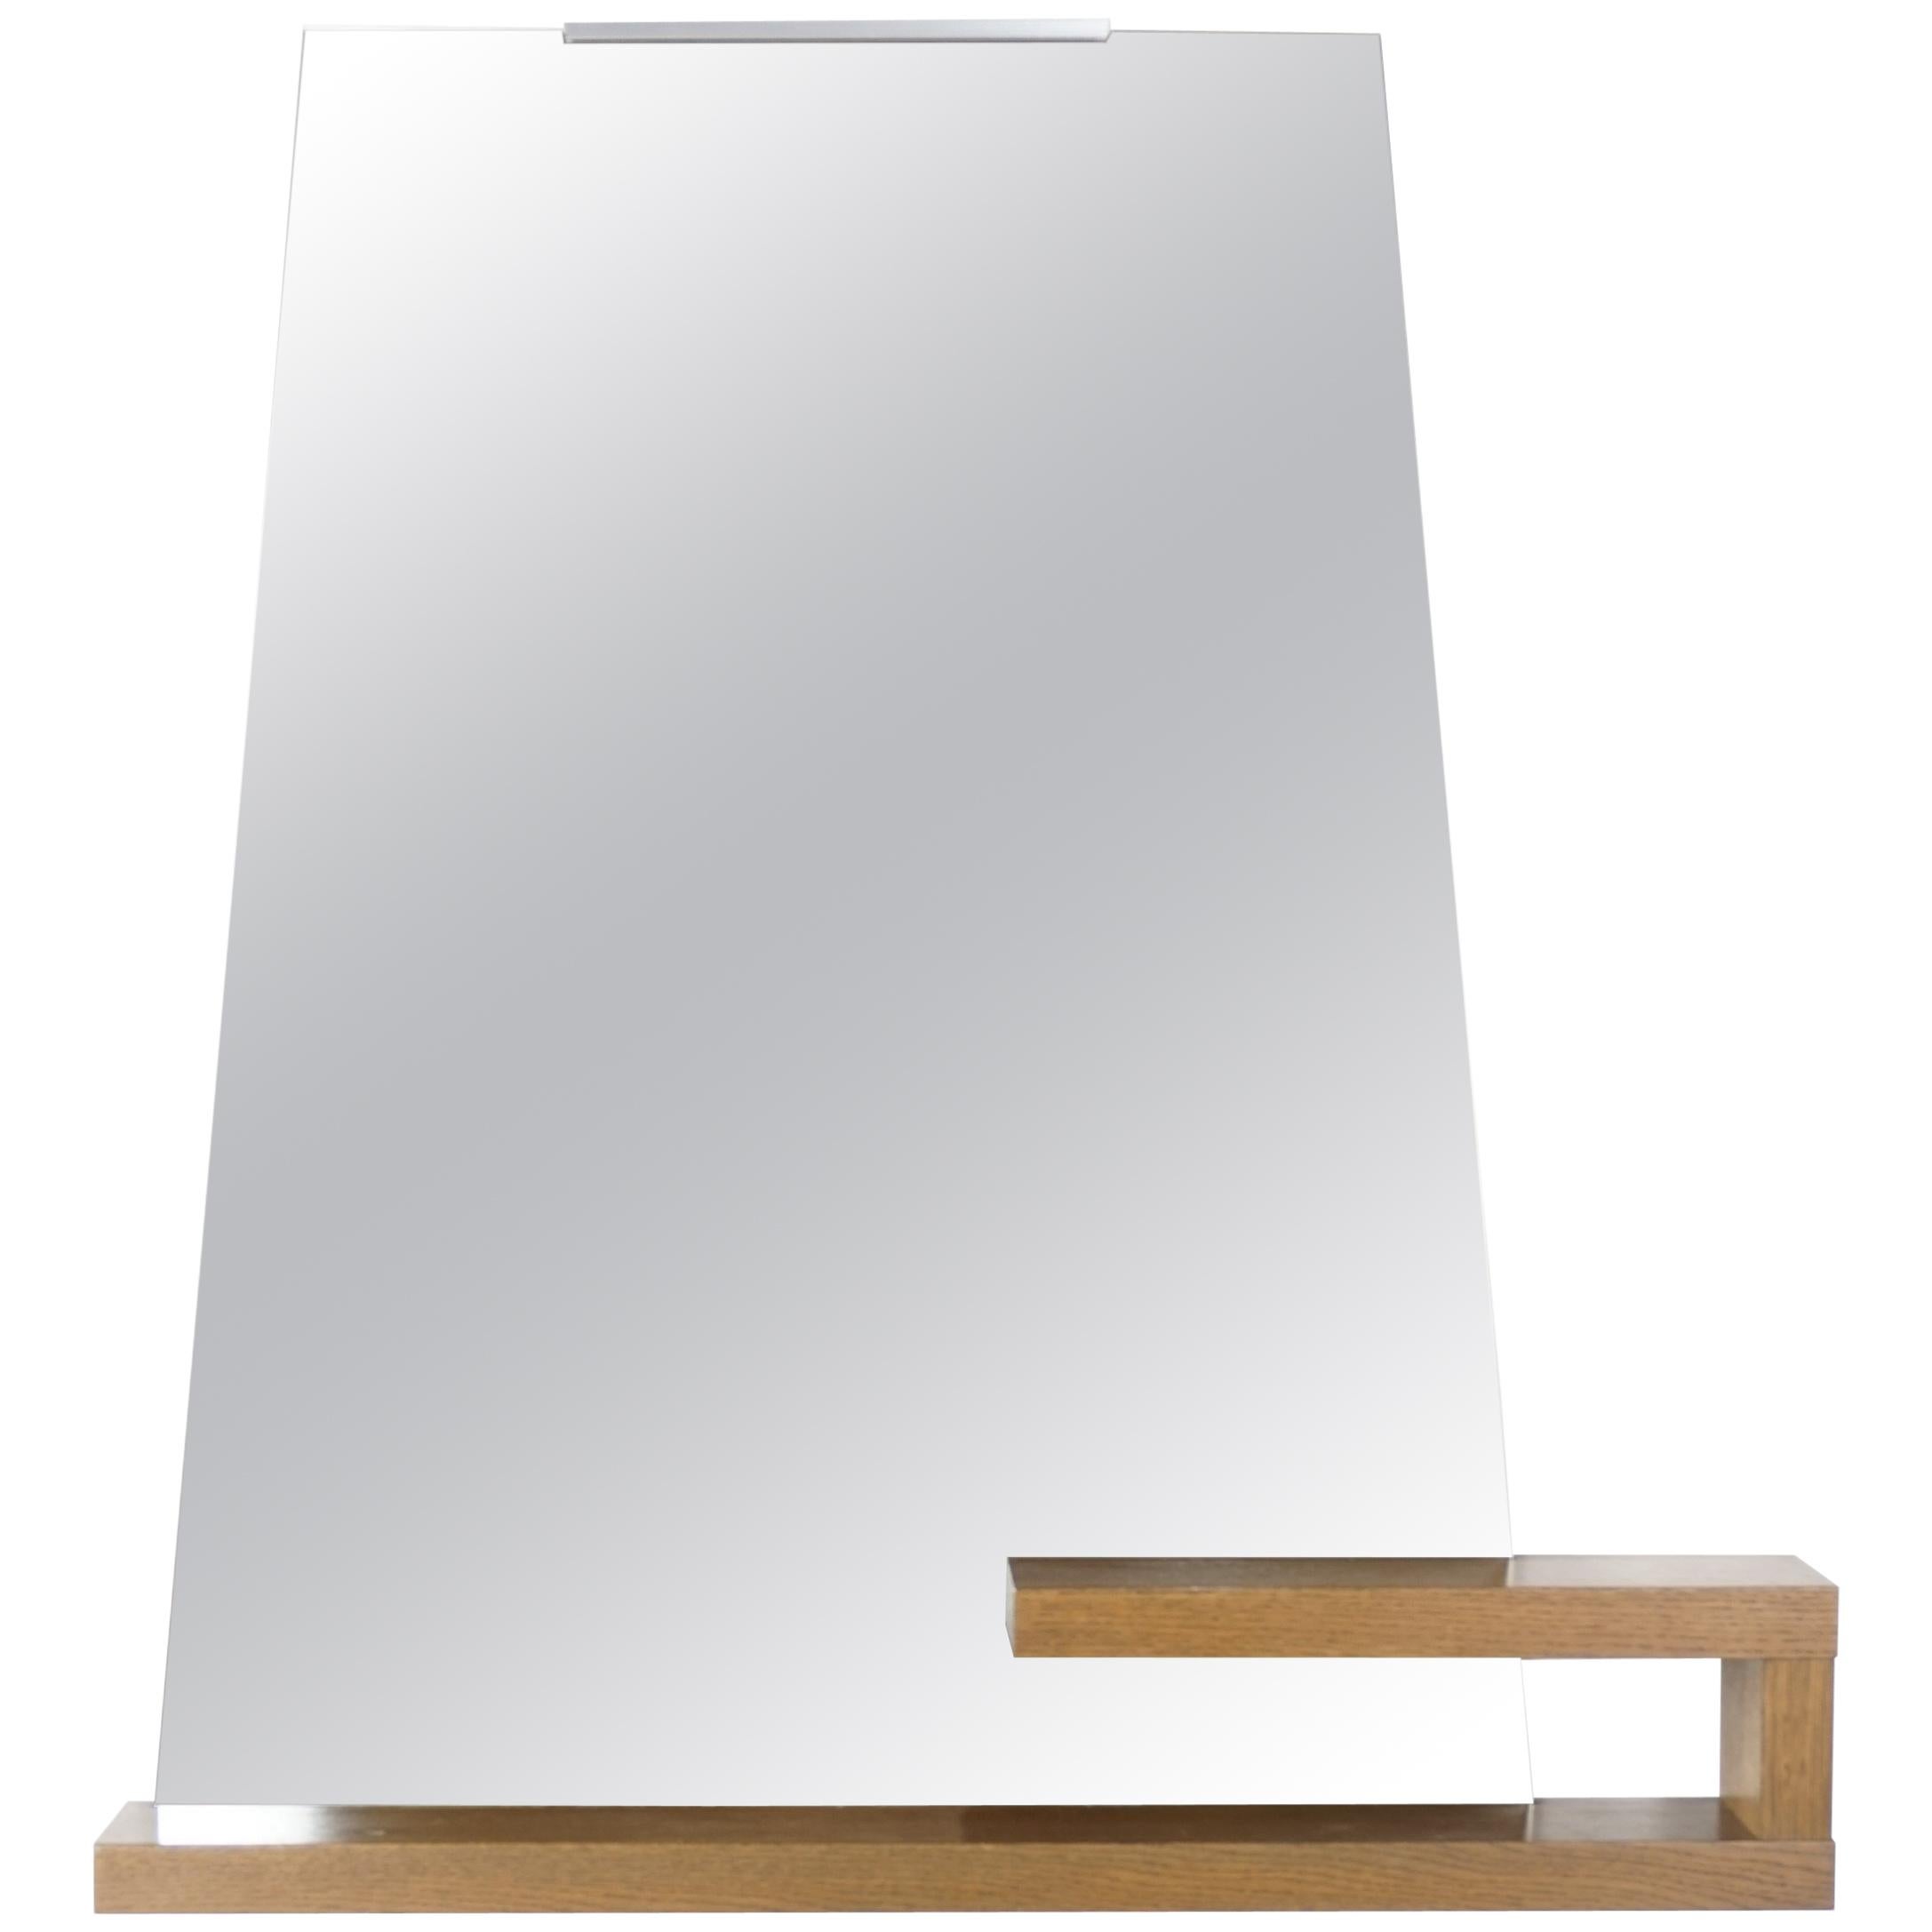 1960s Minimalist Design Mirror with Oak Wooden Storage